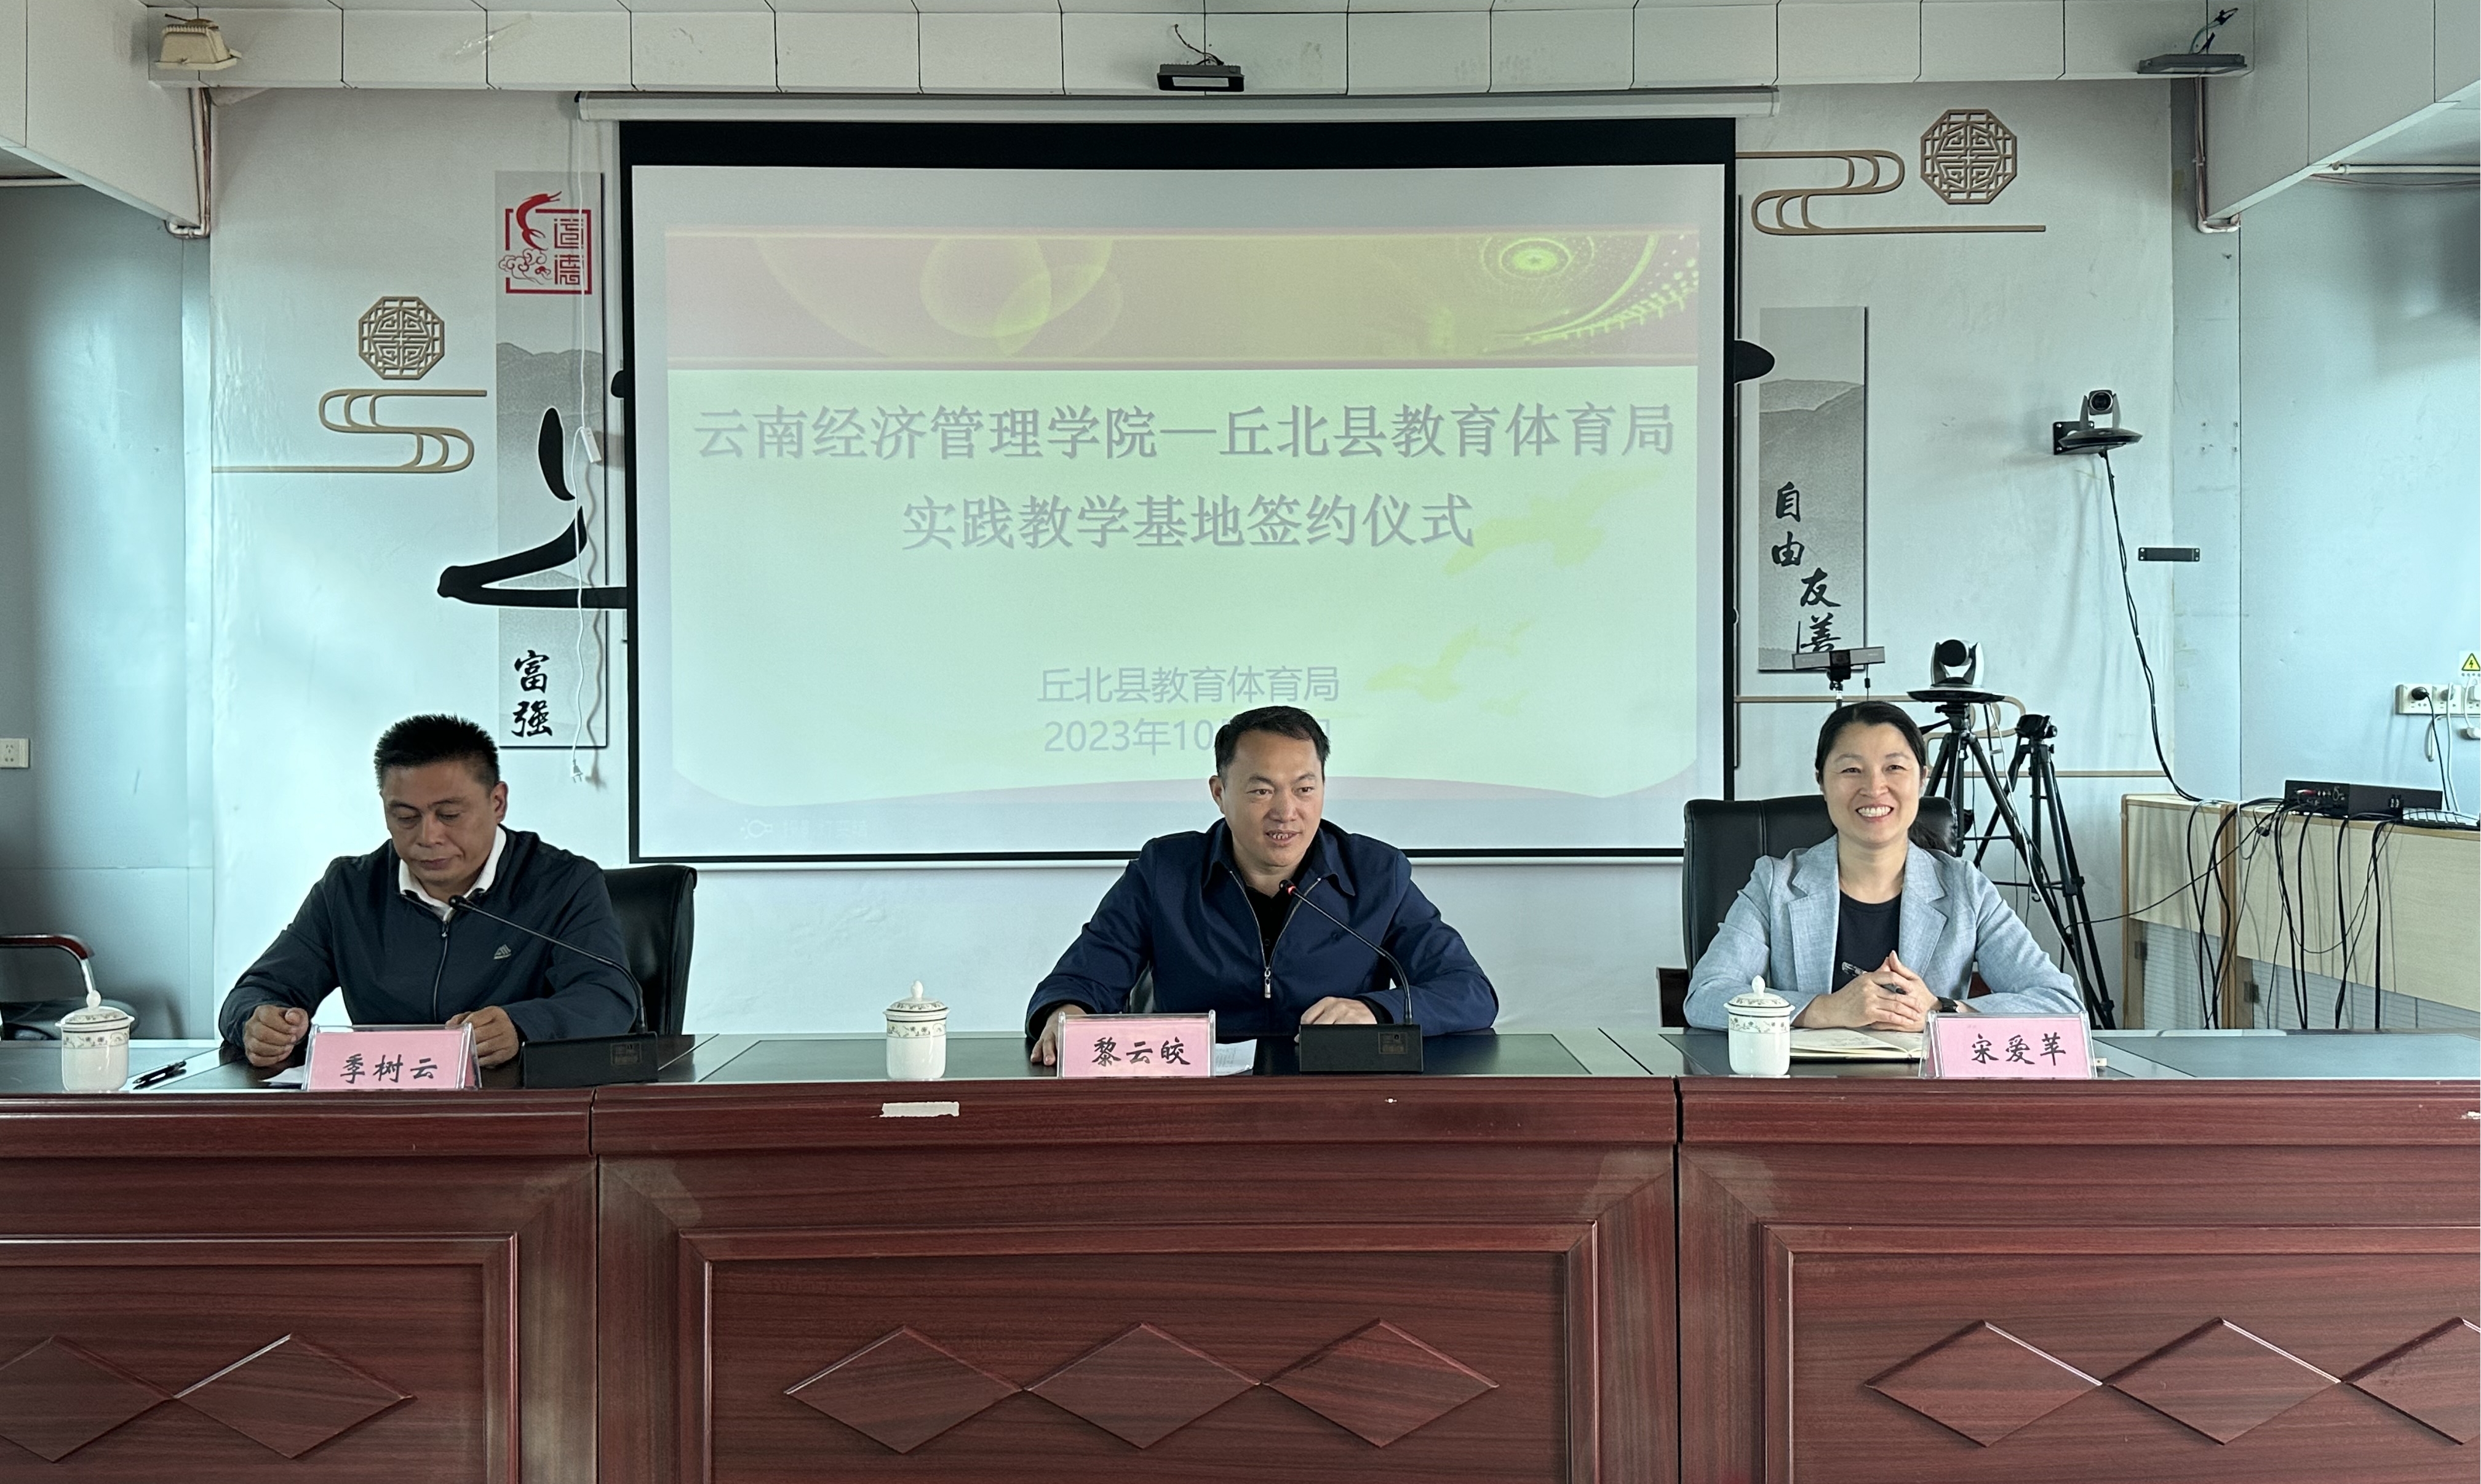 云南经济管理学院与丘北县教育体育局签订战略合作协议 第 1 张